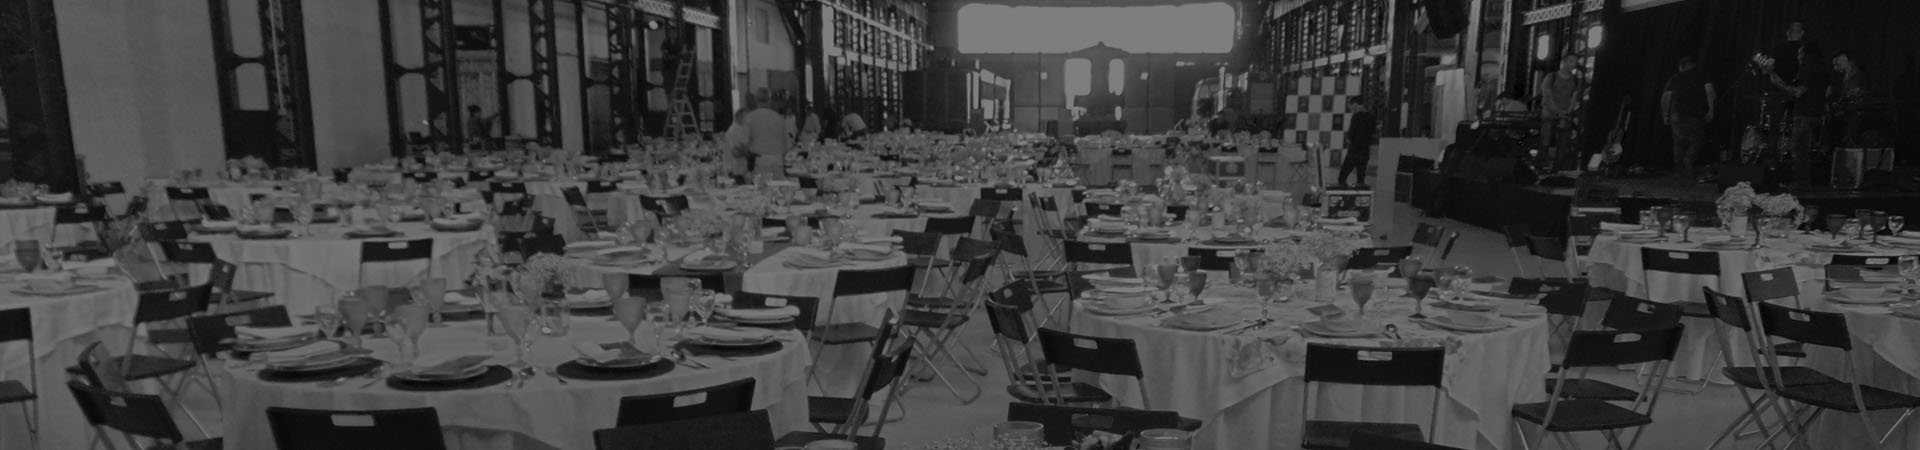 Fotografia das Oficinas do Vapor com mesas e cadeiras preparadas para acolher um banquete